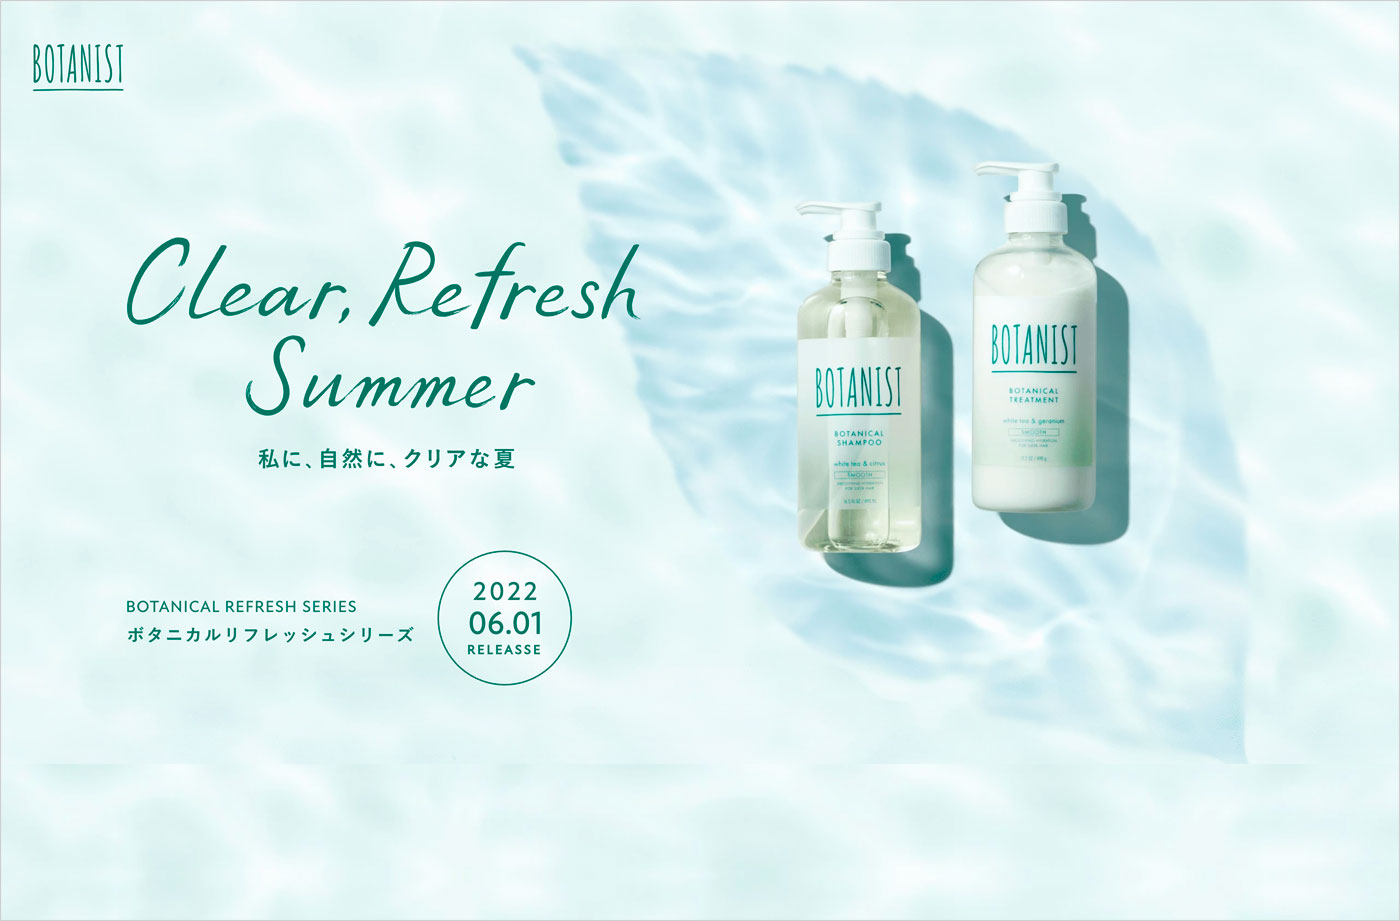 Clear Refresh Summer. BOTANICAL REFRESH SERIES’22ウェブサイトの画面キャプチャ画像